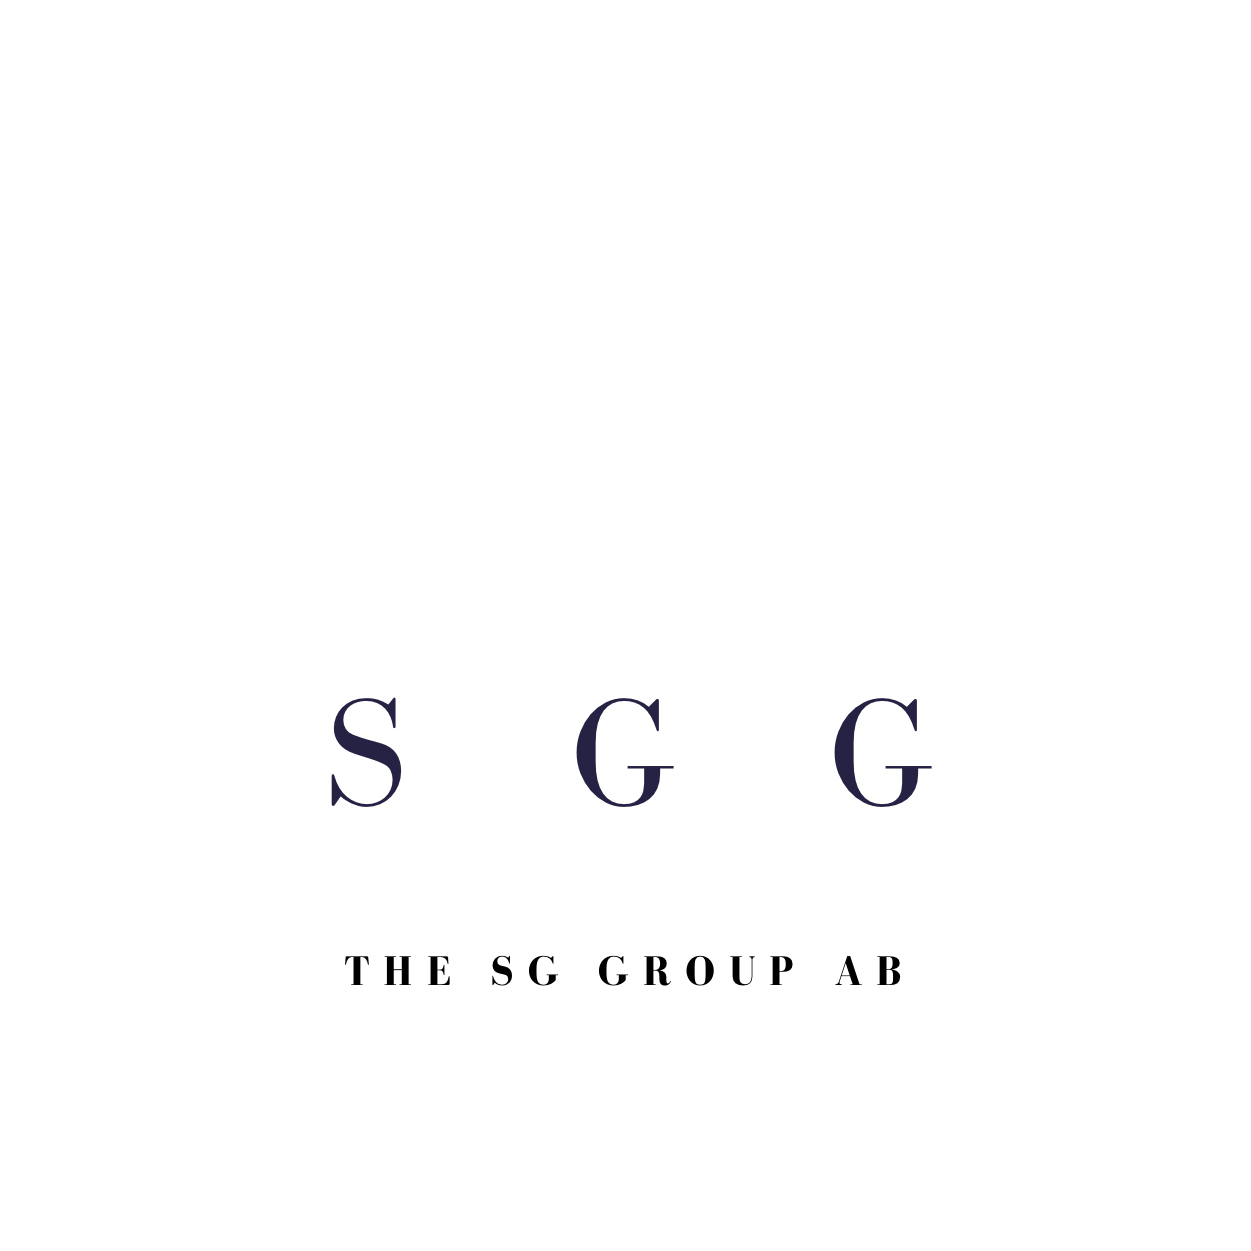 The SG Group AB